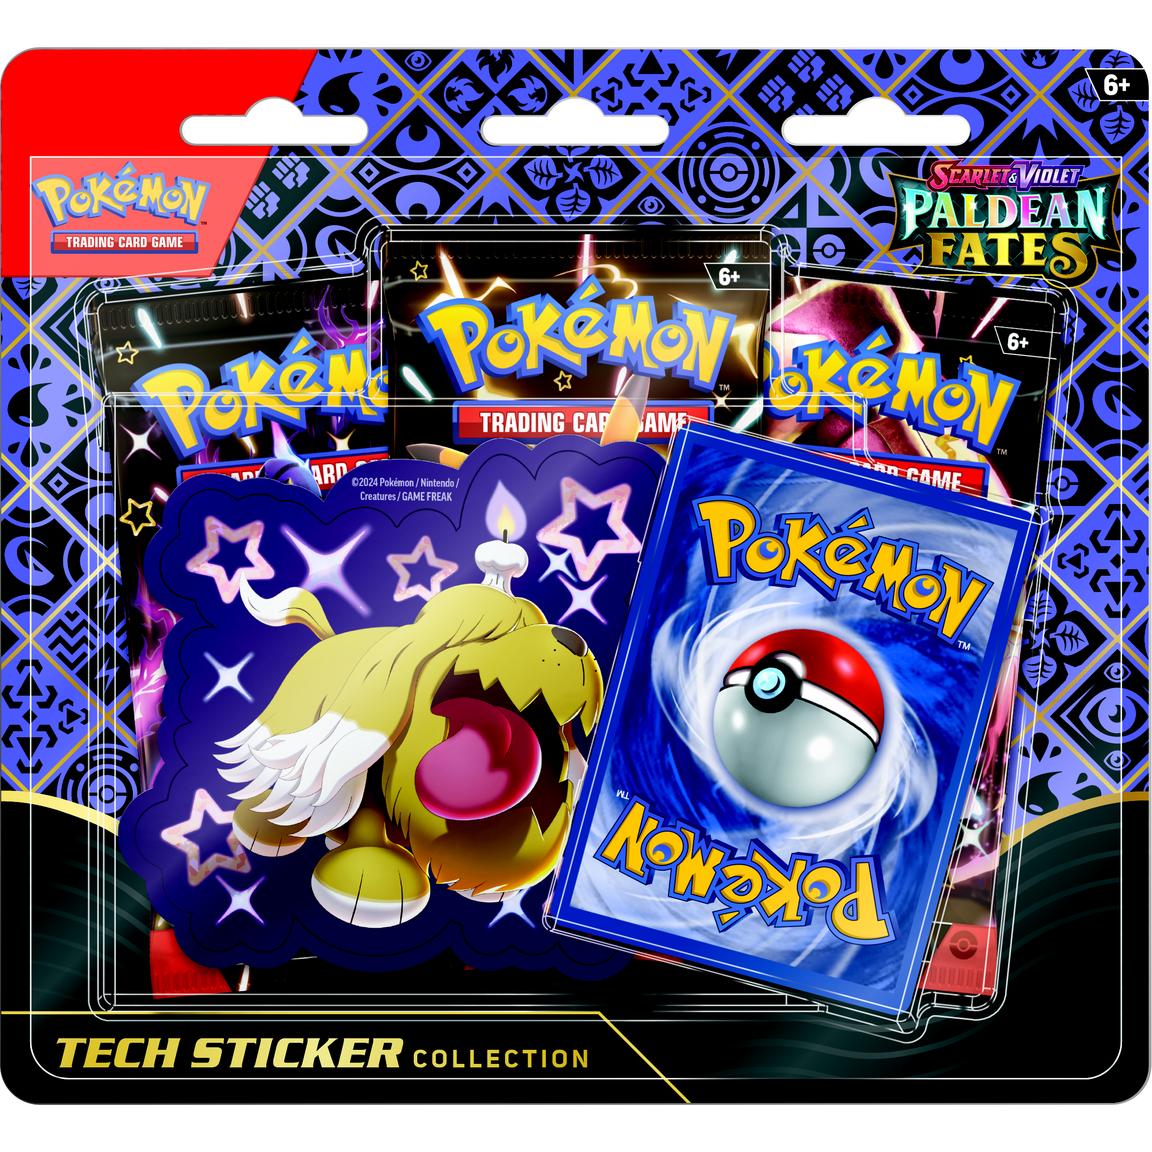 Pokémon - Scarlet and Violet, Paldean Fates: Tech Sticker Collection